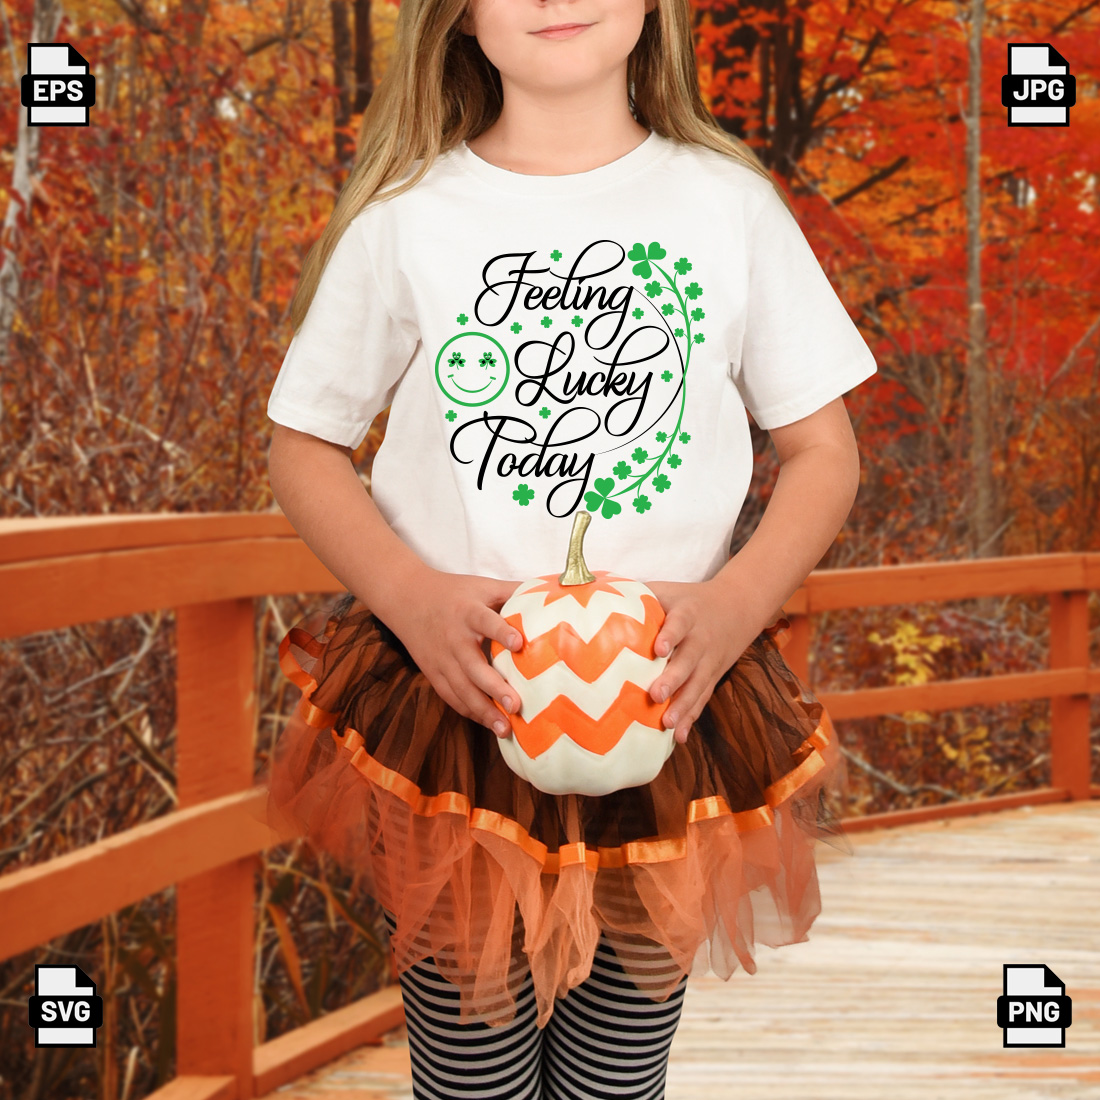 Little girl holding a pumpkin on a bridge.